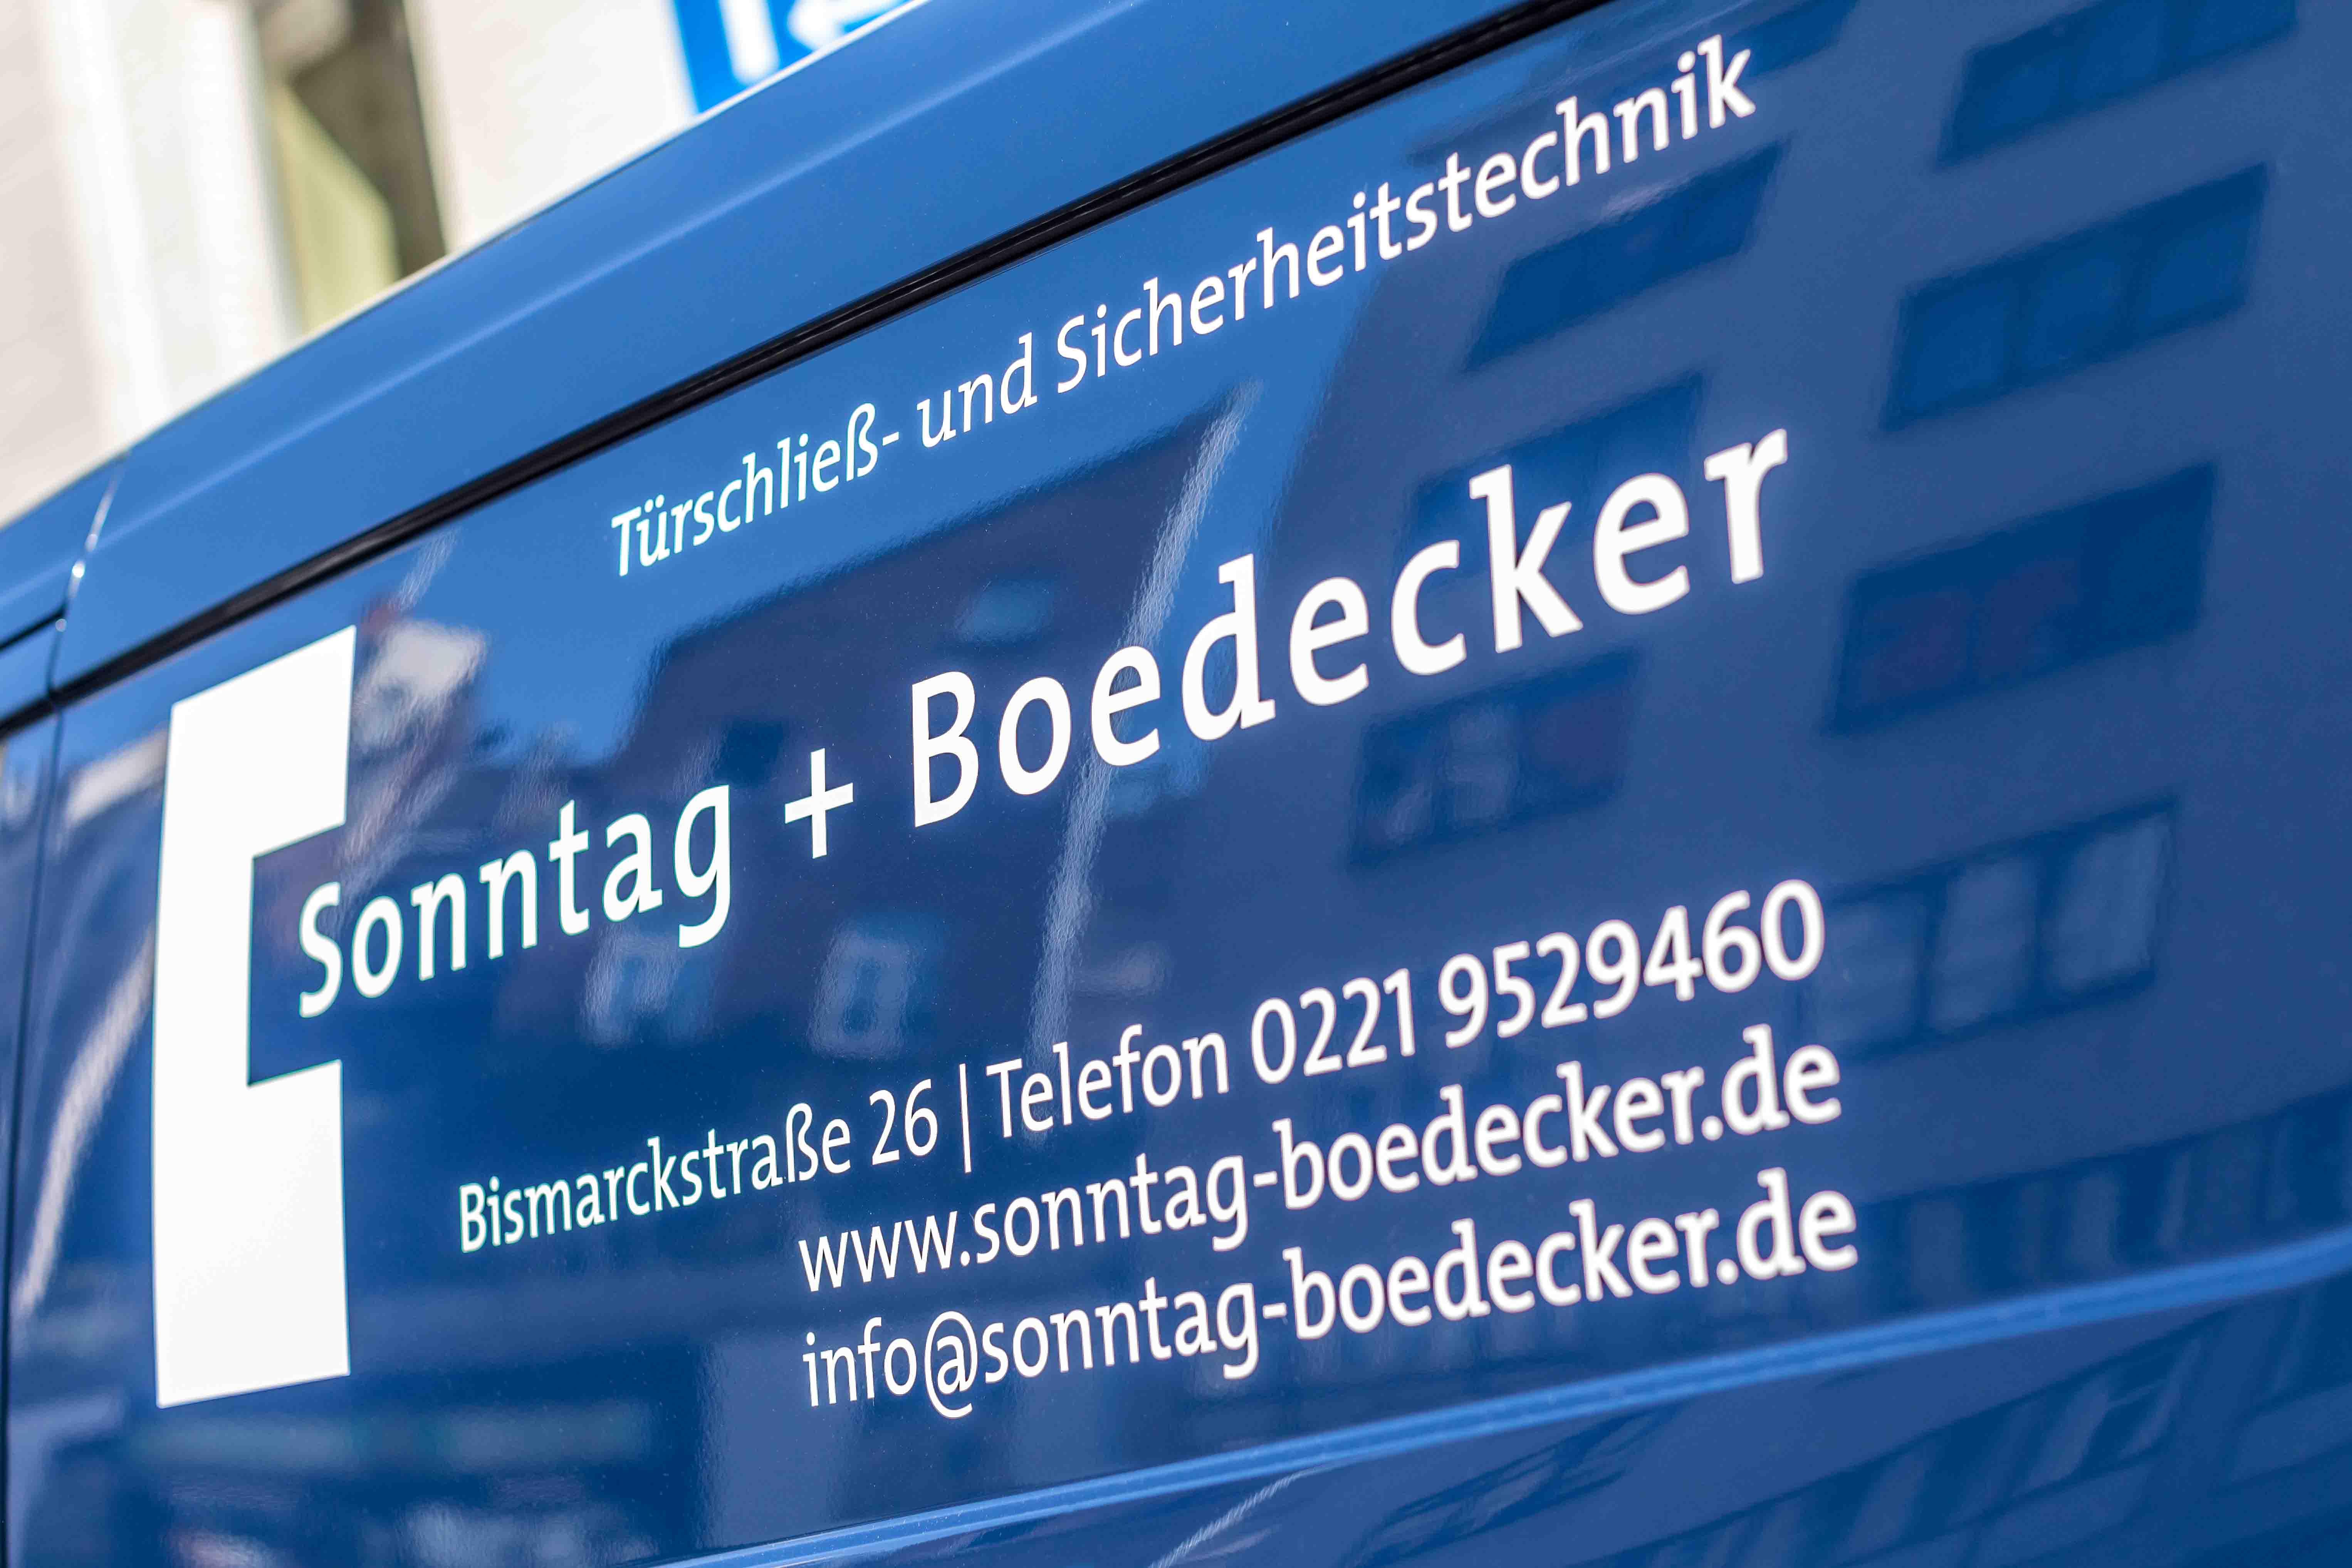 Sonntag + Boedecker Sicherheitstechnik GmbH, Bismarckstr. 26 in Köln